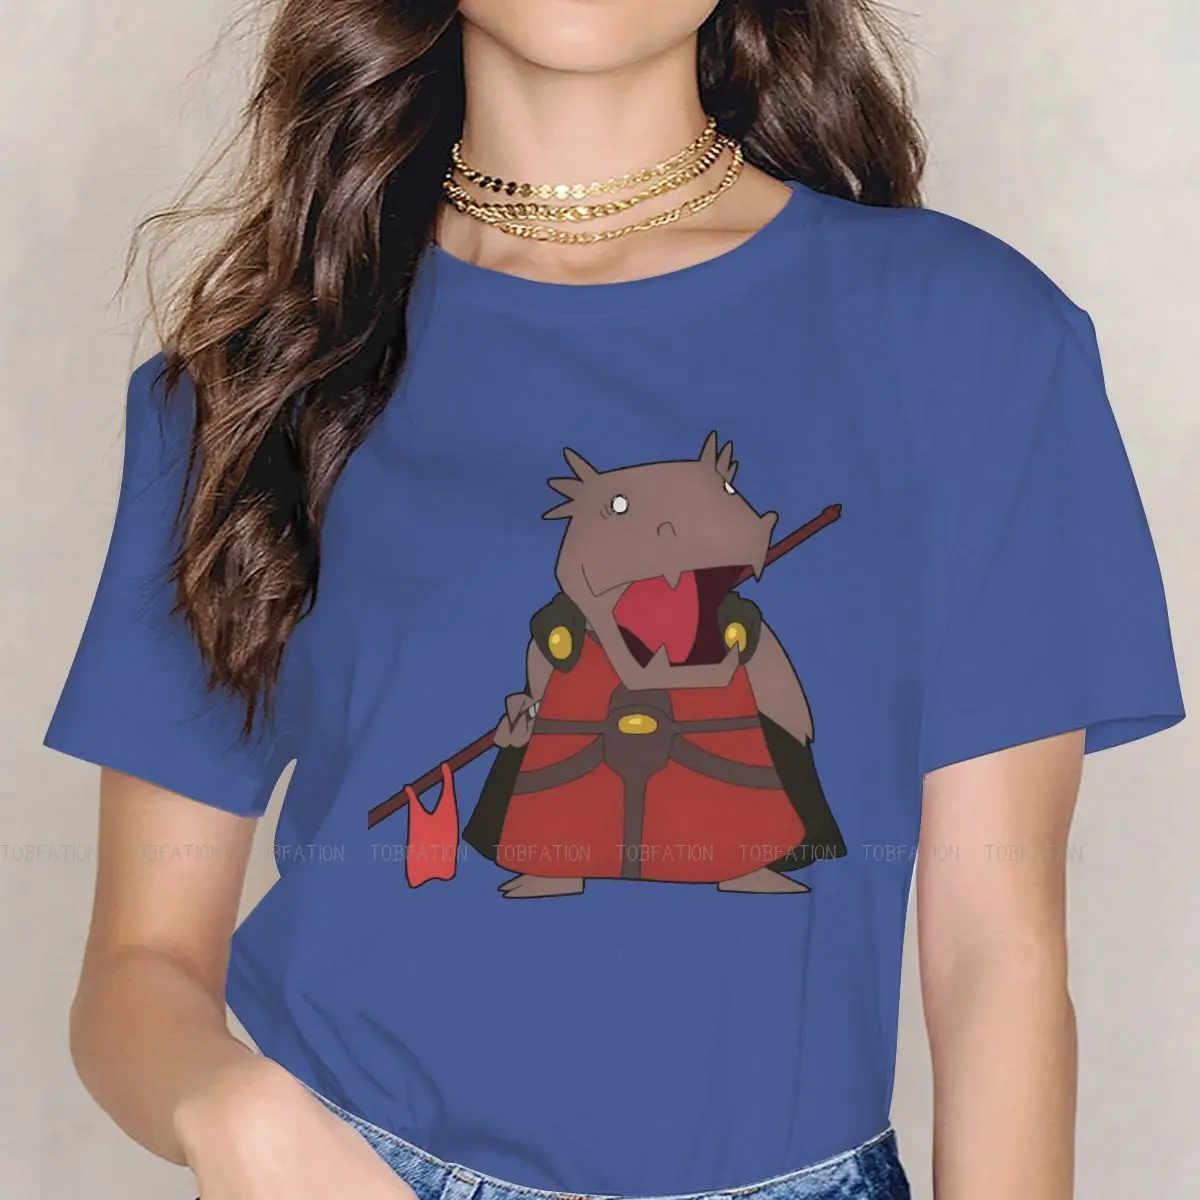 

Уникальная футболка Rak Chibi для девушек с изображением башни Бога двадцать пятой БАМ 4XL Креативная идея для подарка футболка вещи